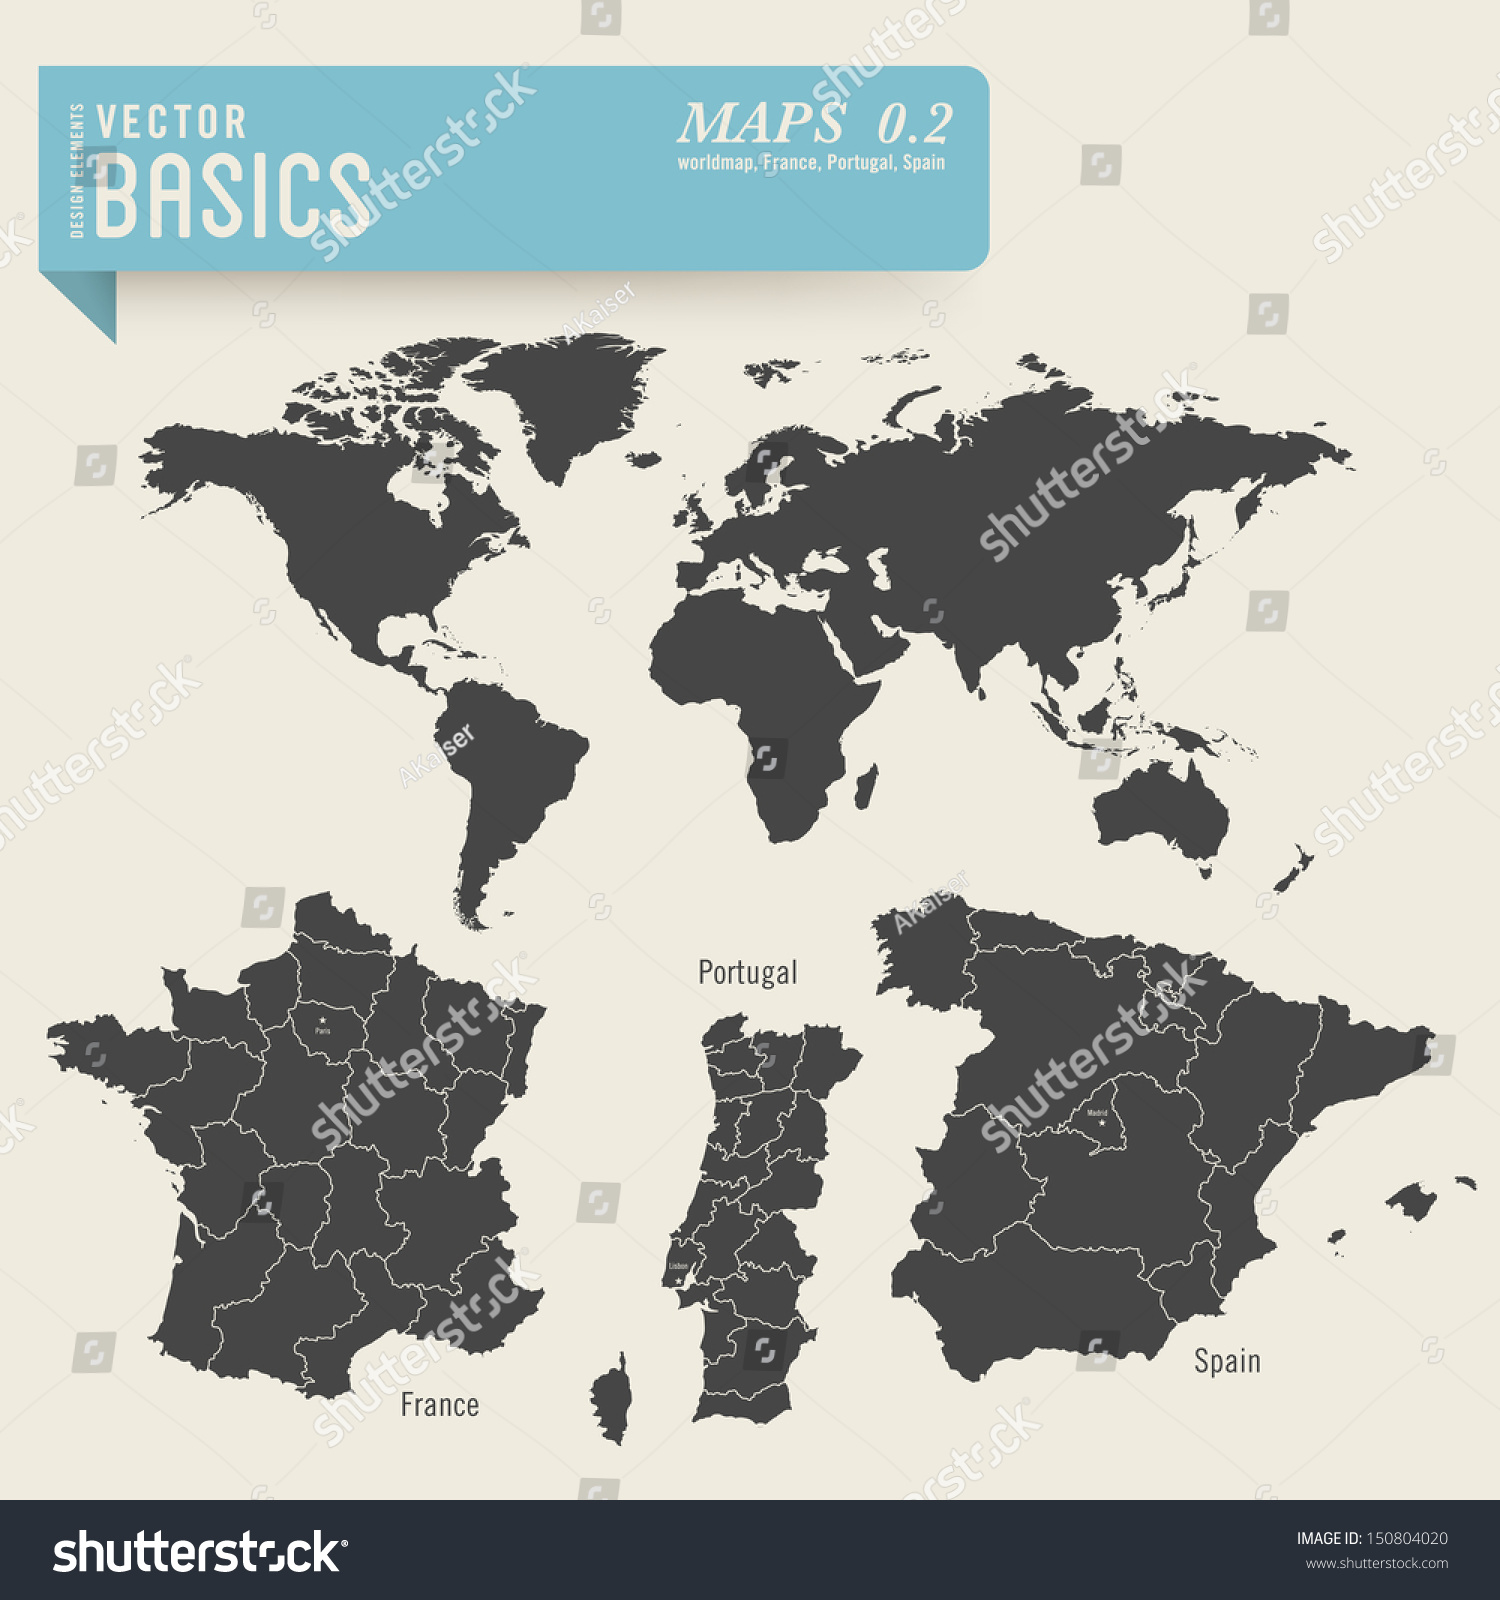 矢量基础:worldmap和法国的详细地图,葡萄牙和